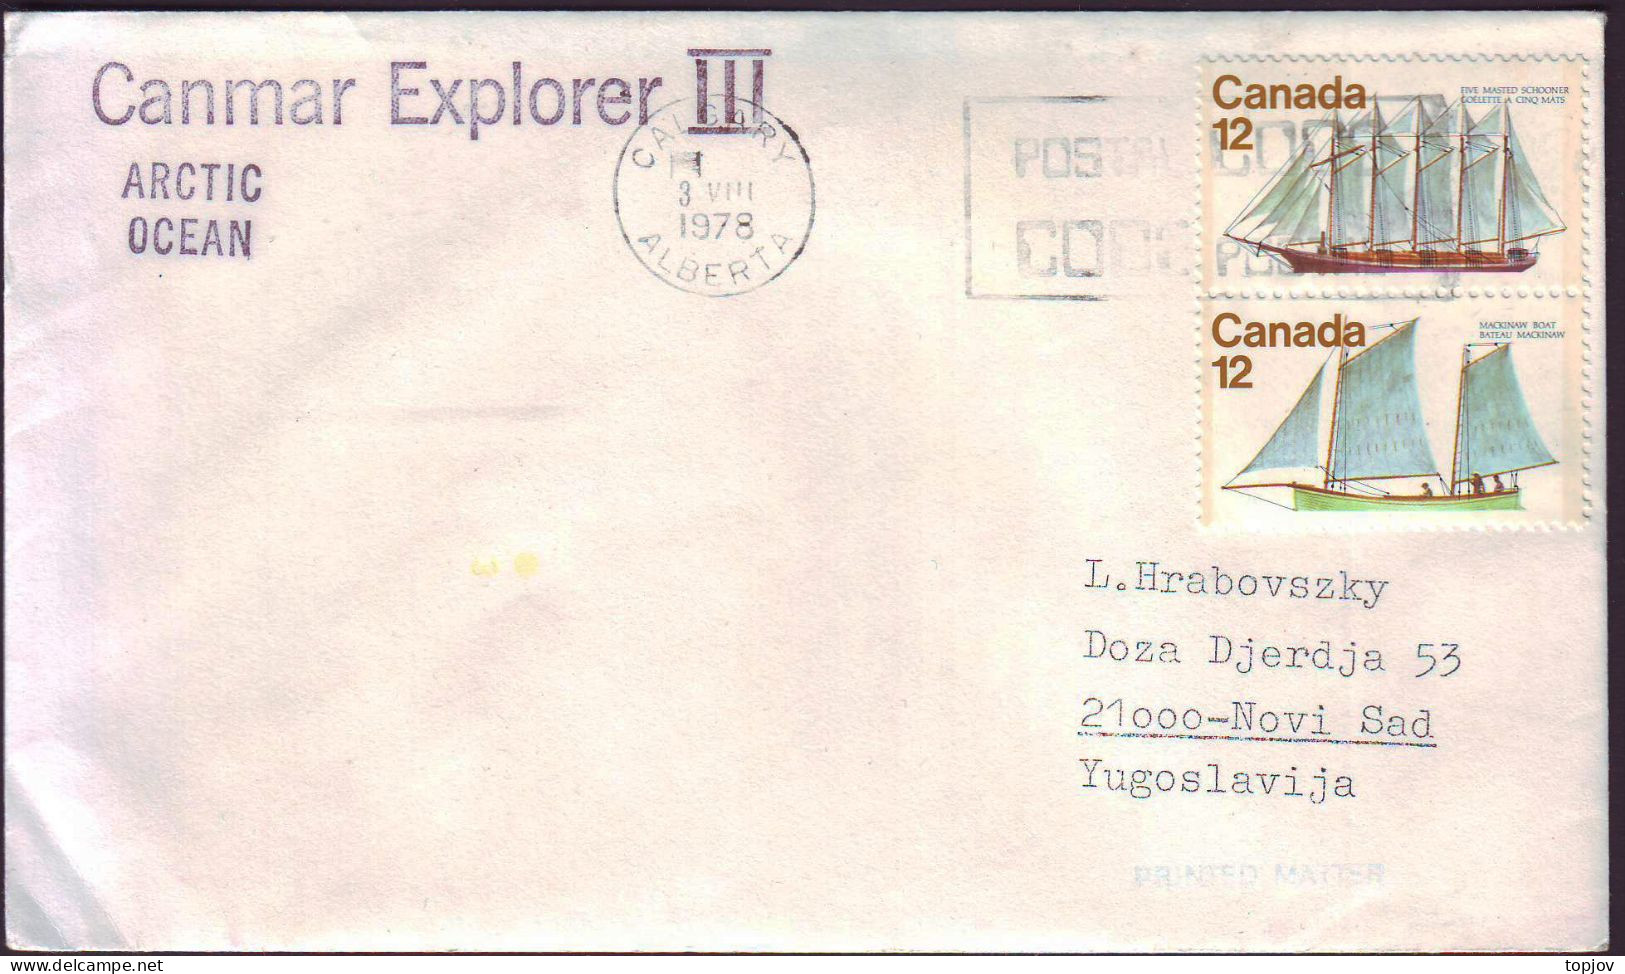 CANADA - CANMAR  EXPLORER  III  IN ARCTIC OCEAN - 1978 - Arctic Expeditions